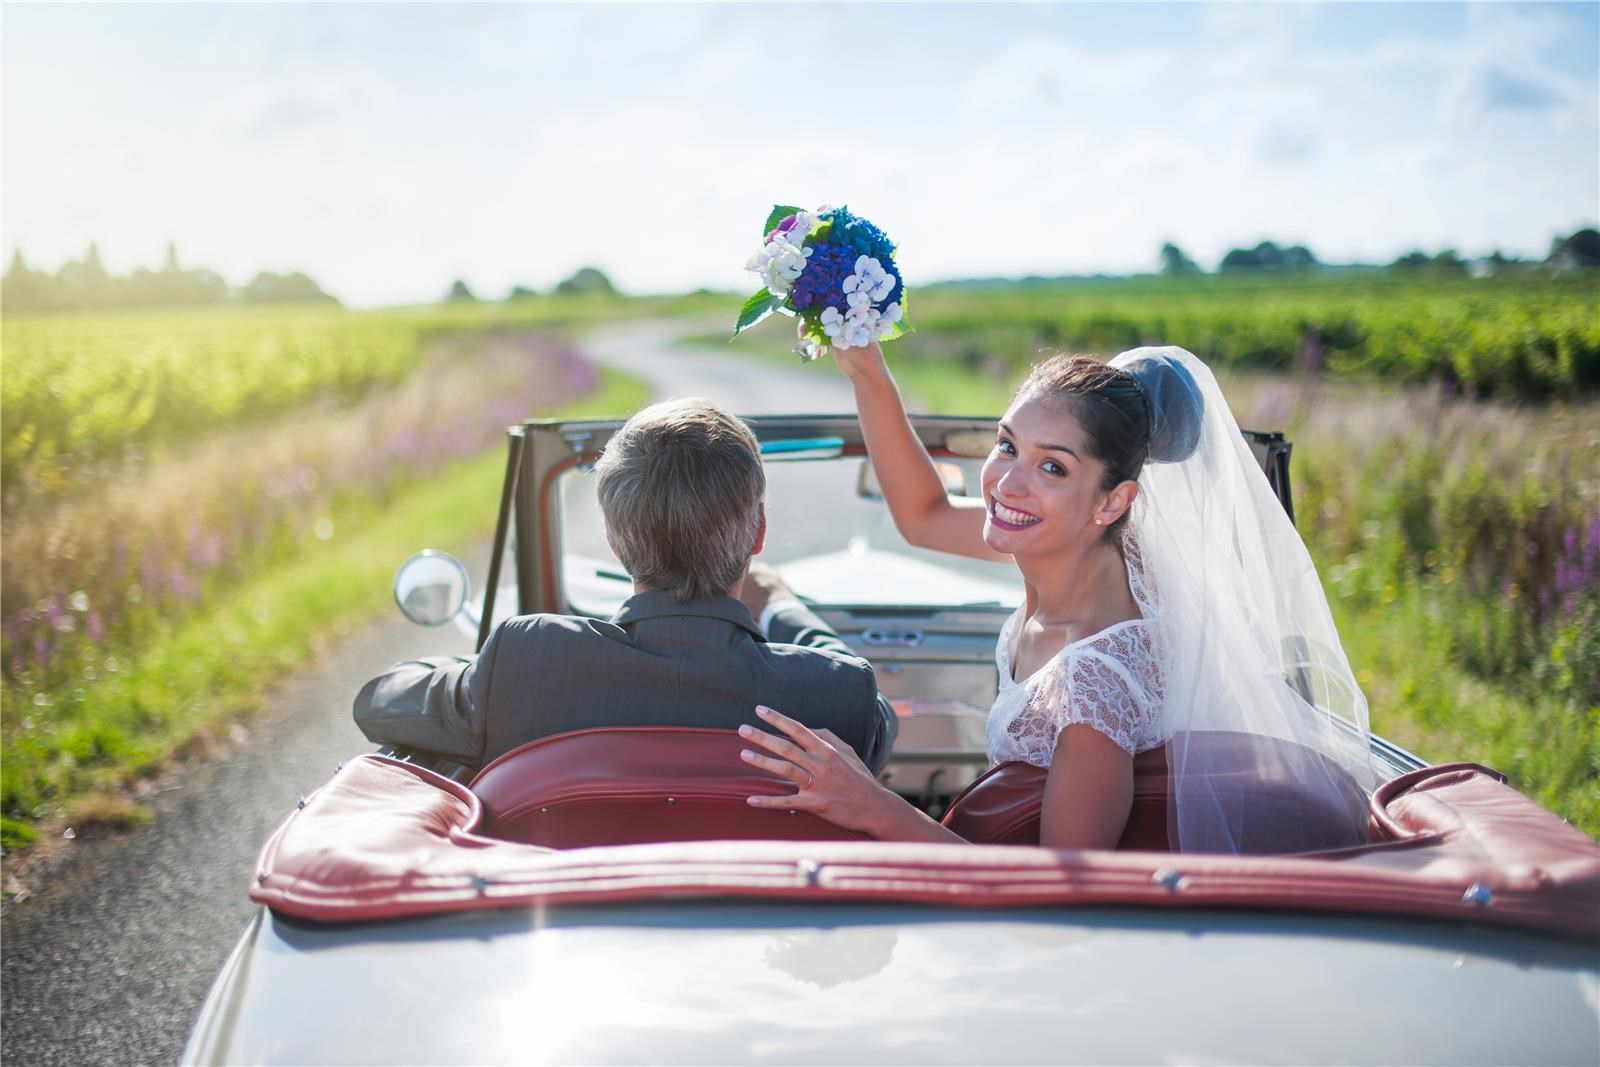 חתן וכלה נוסעים ברכב כאשר הכלה מנופפת בזר פרחים לאחר טקס החתונה האזרחית